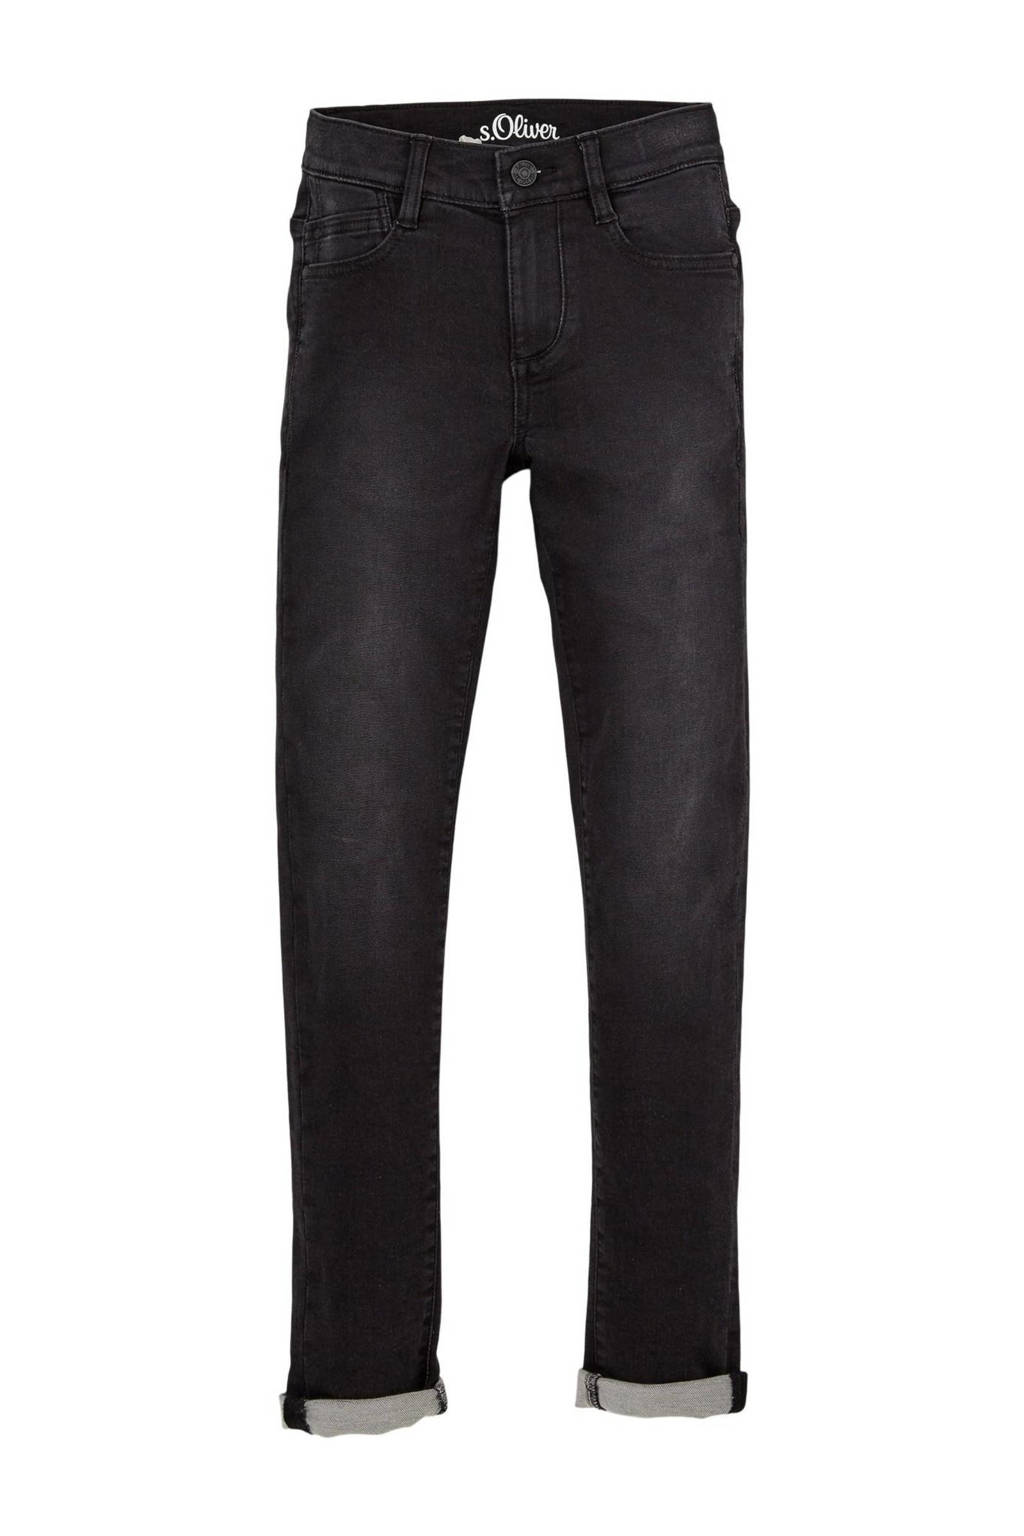 s.Oliver skinny jeans grijs, Dark denim